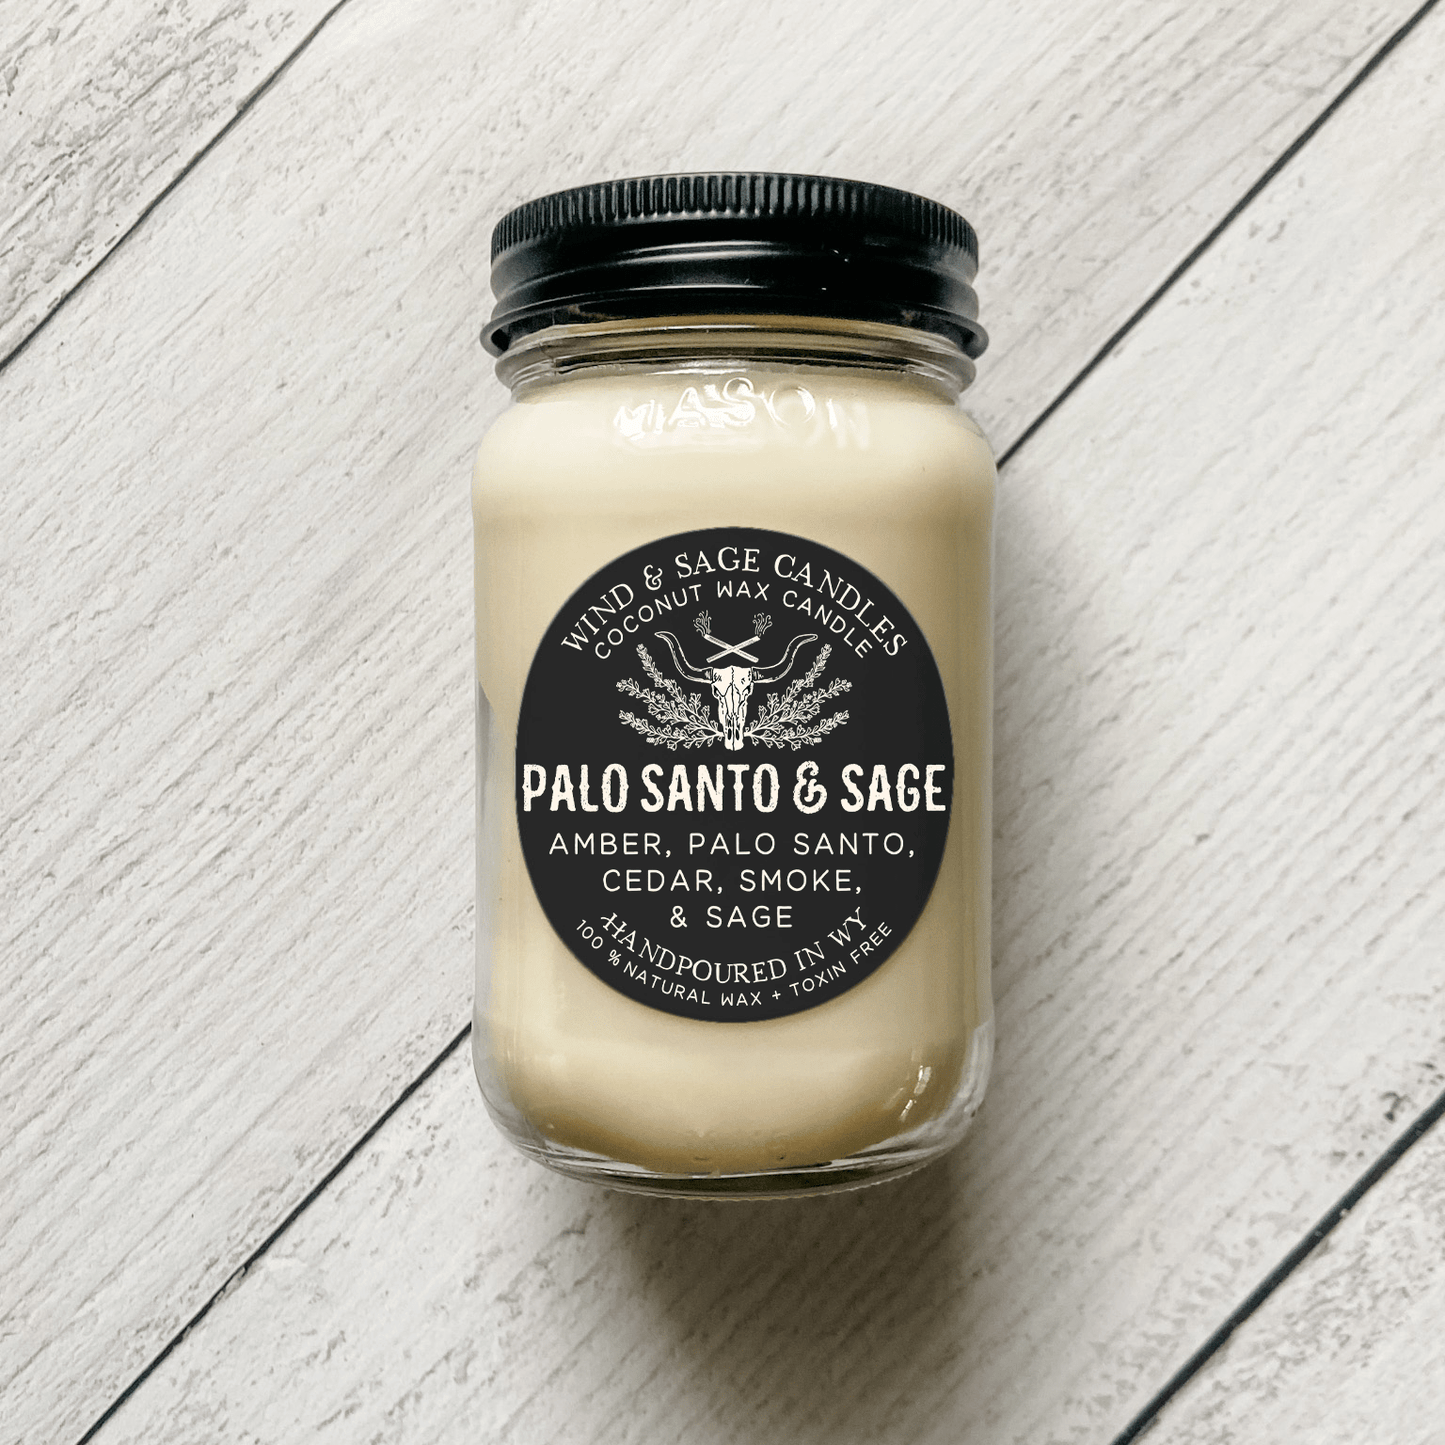 Palo Santo & Sage Mason Jar Candle, 100% Natural Wax